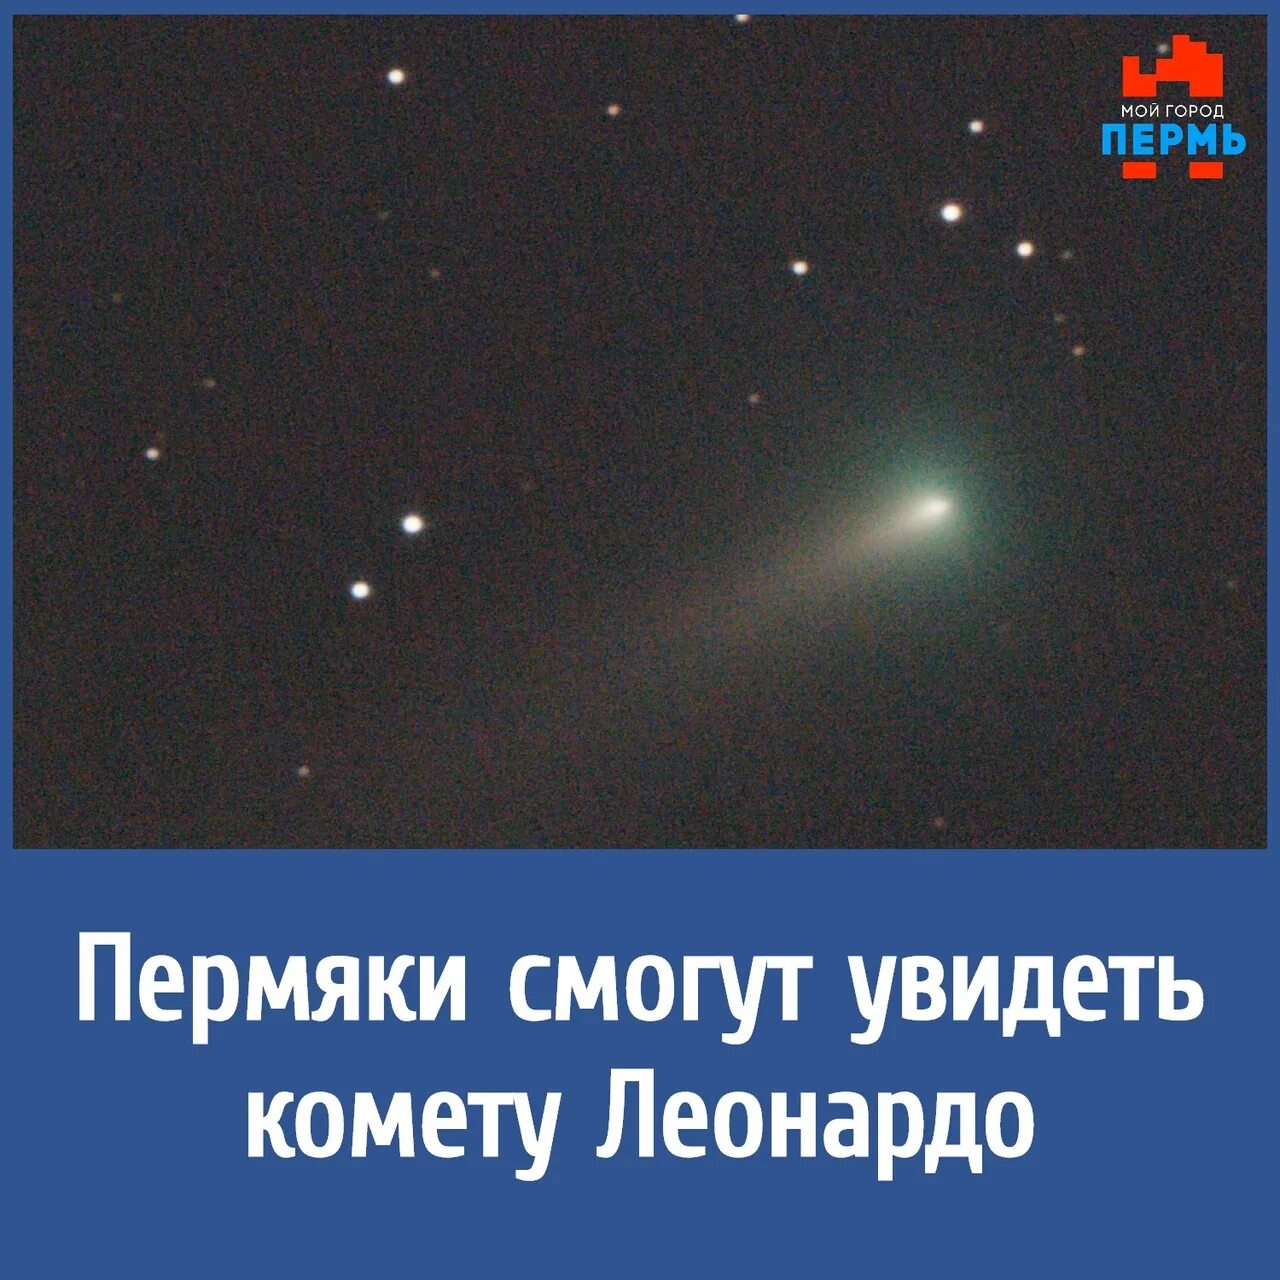 Когда можно увидеть комету в москве. Комета Леонардо. Как выглядит Комета Леонардо. Где можно увидеть комету. В какой части неба видна Комета.